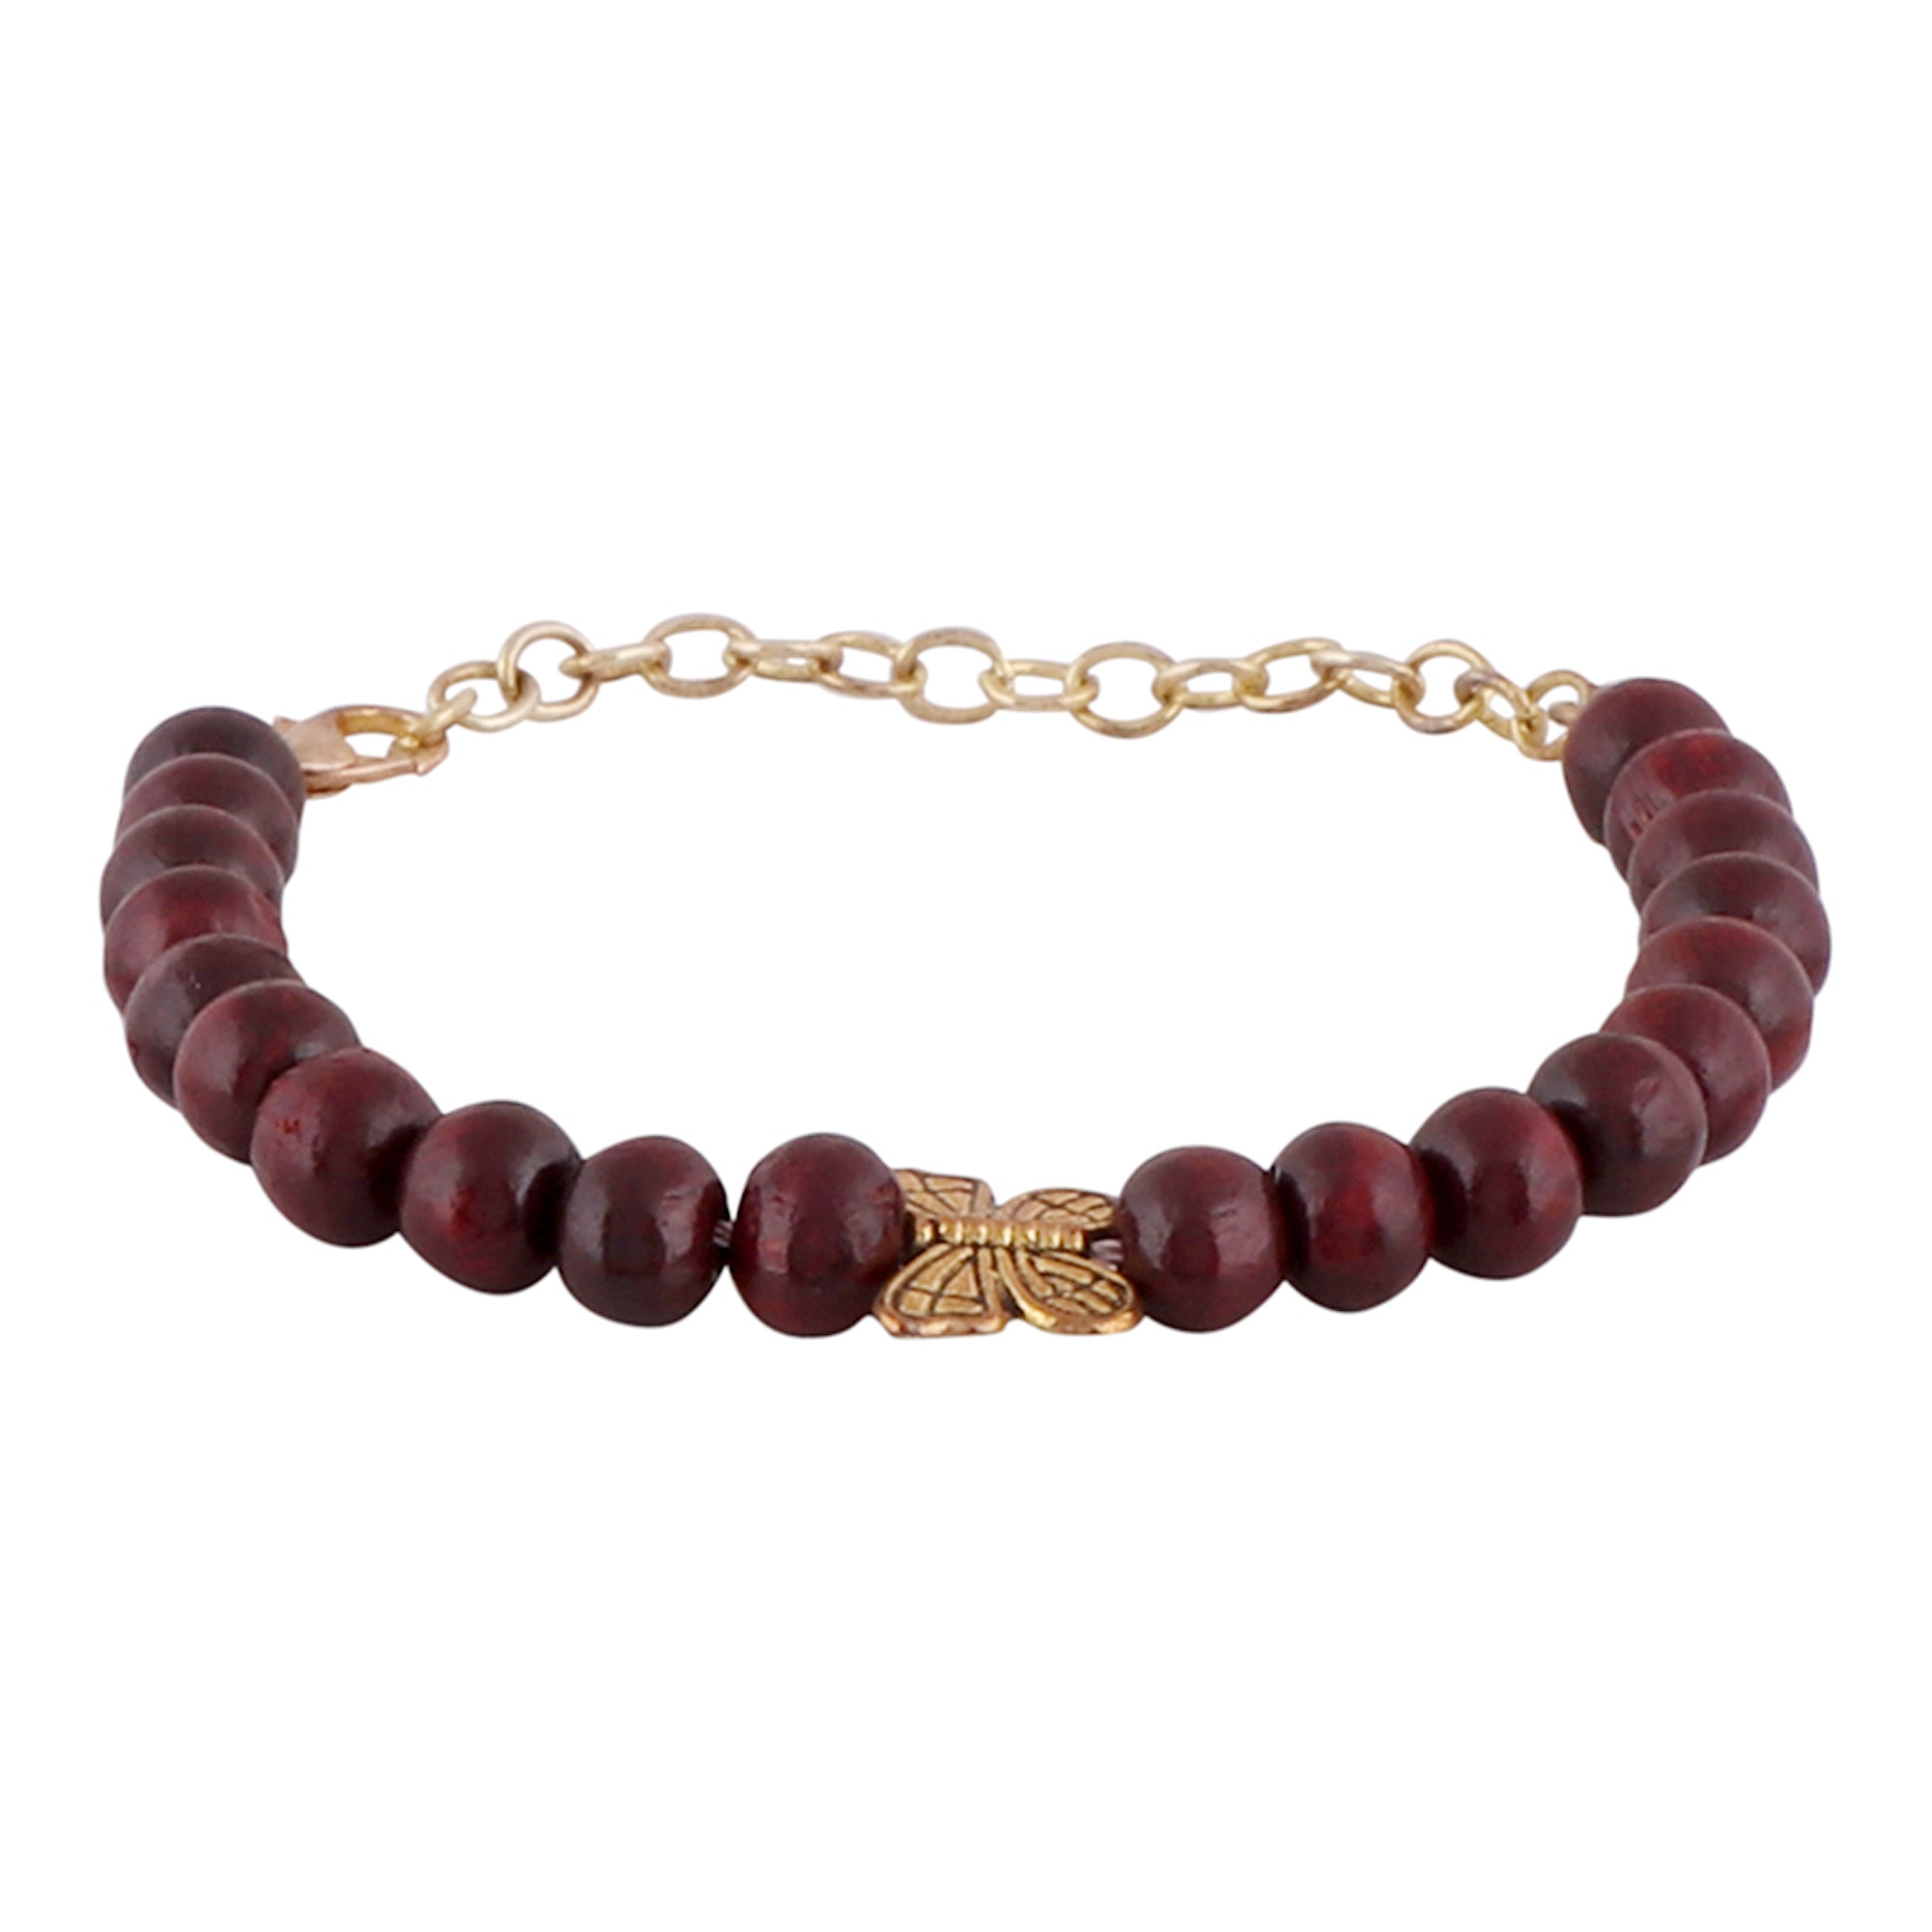 Wooden beads bracelet with unique design Bracelet for men Unigender bracelet Bracelet